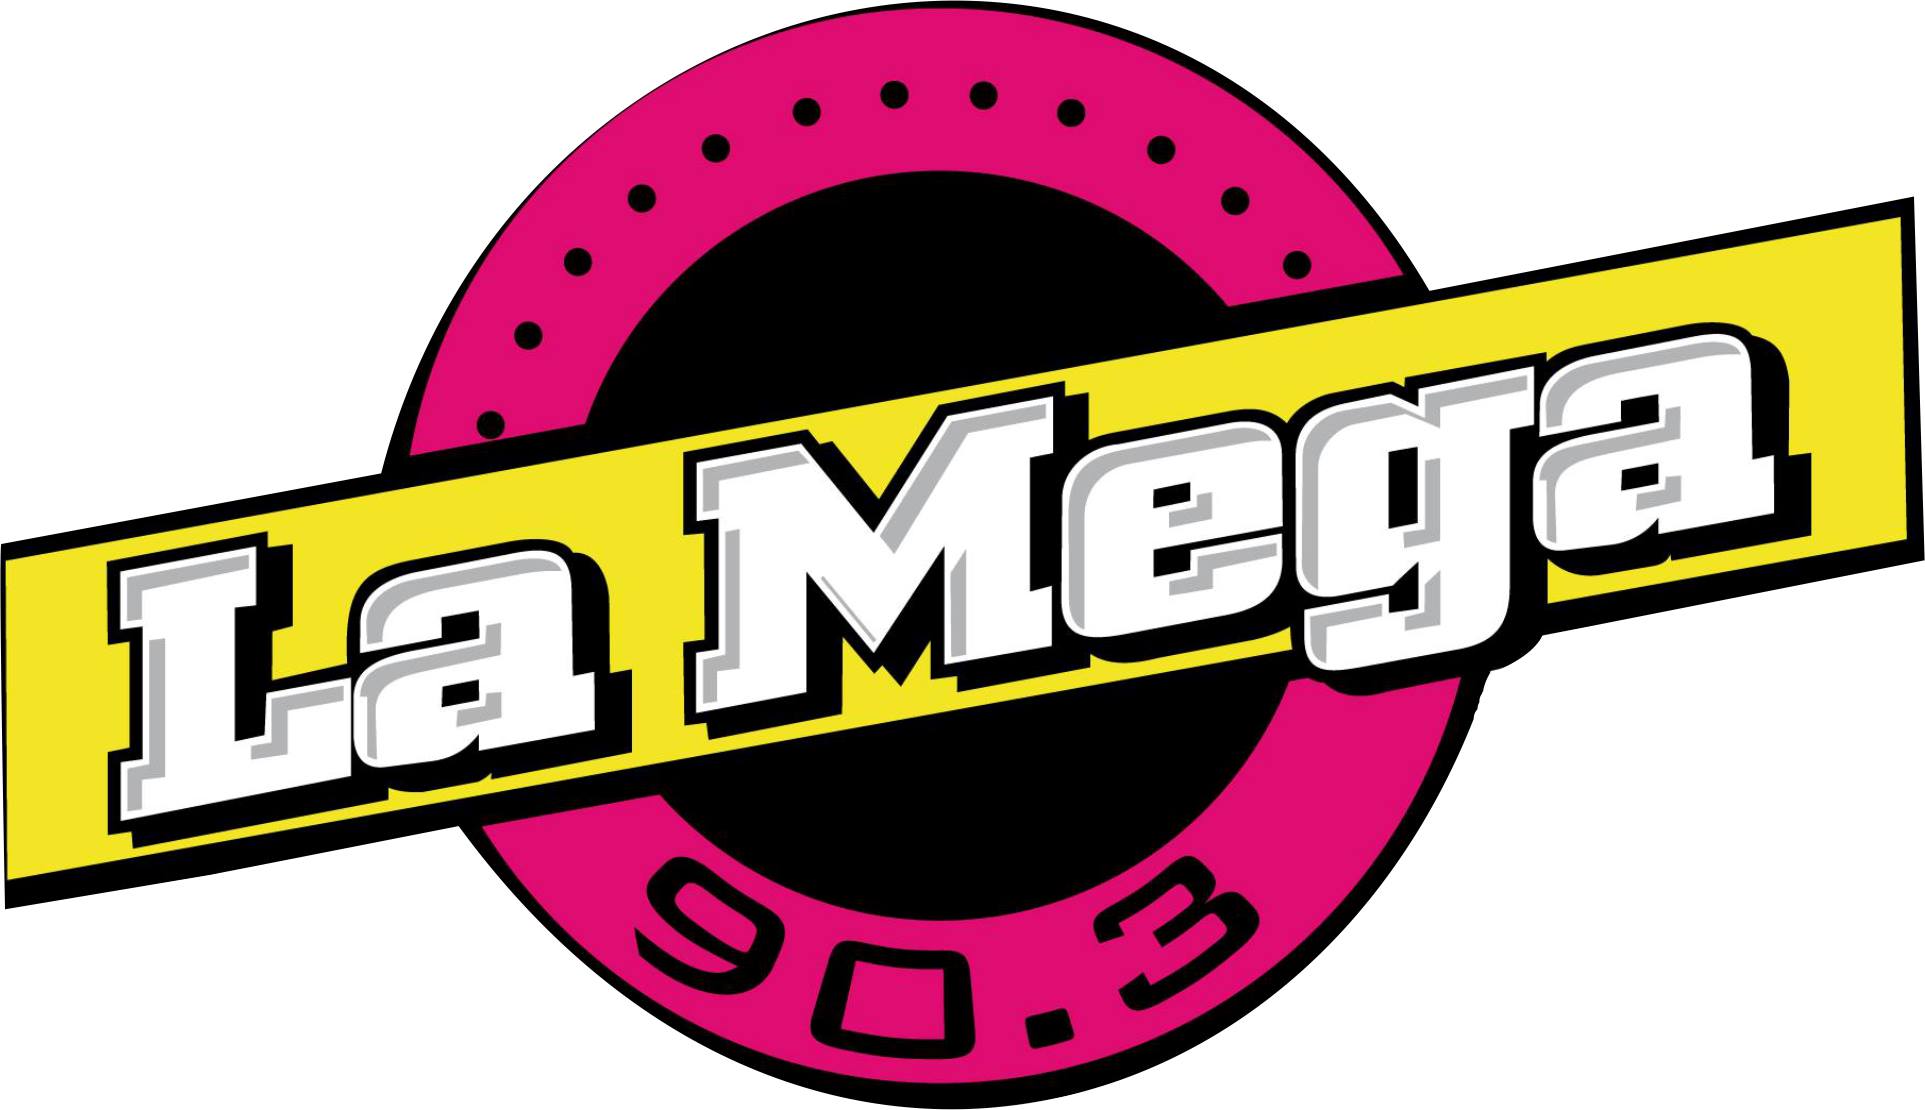 La Mega